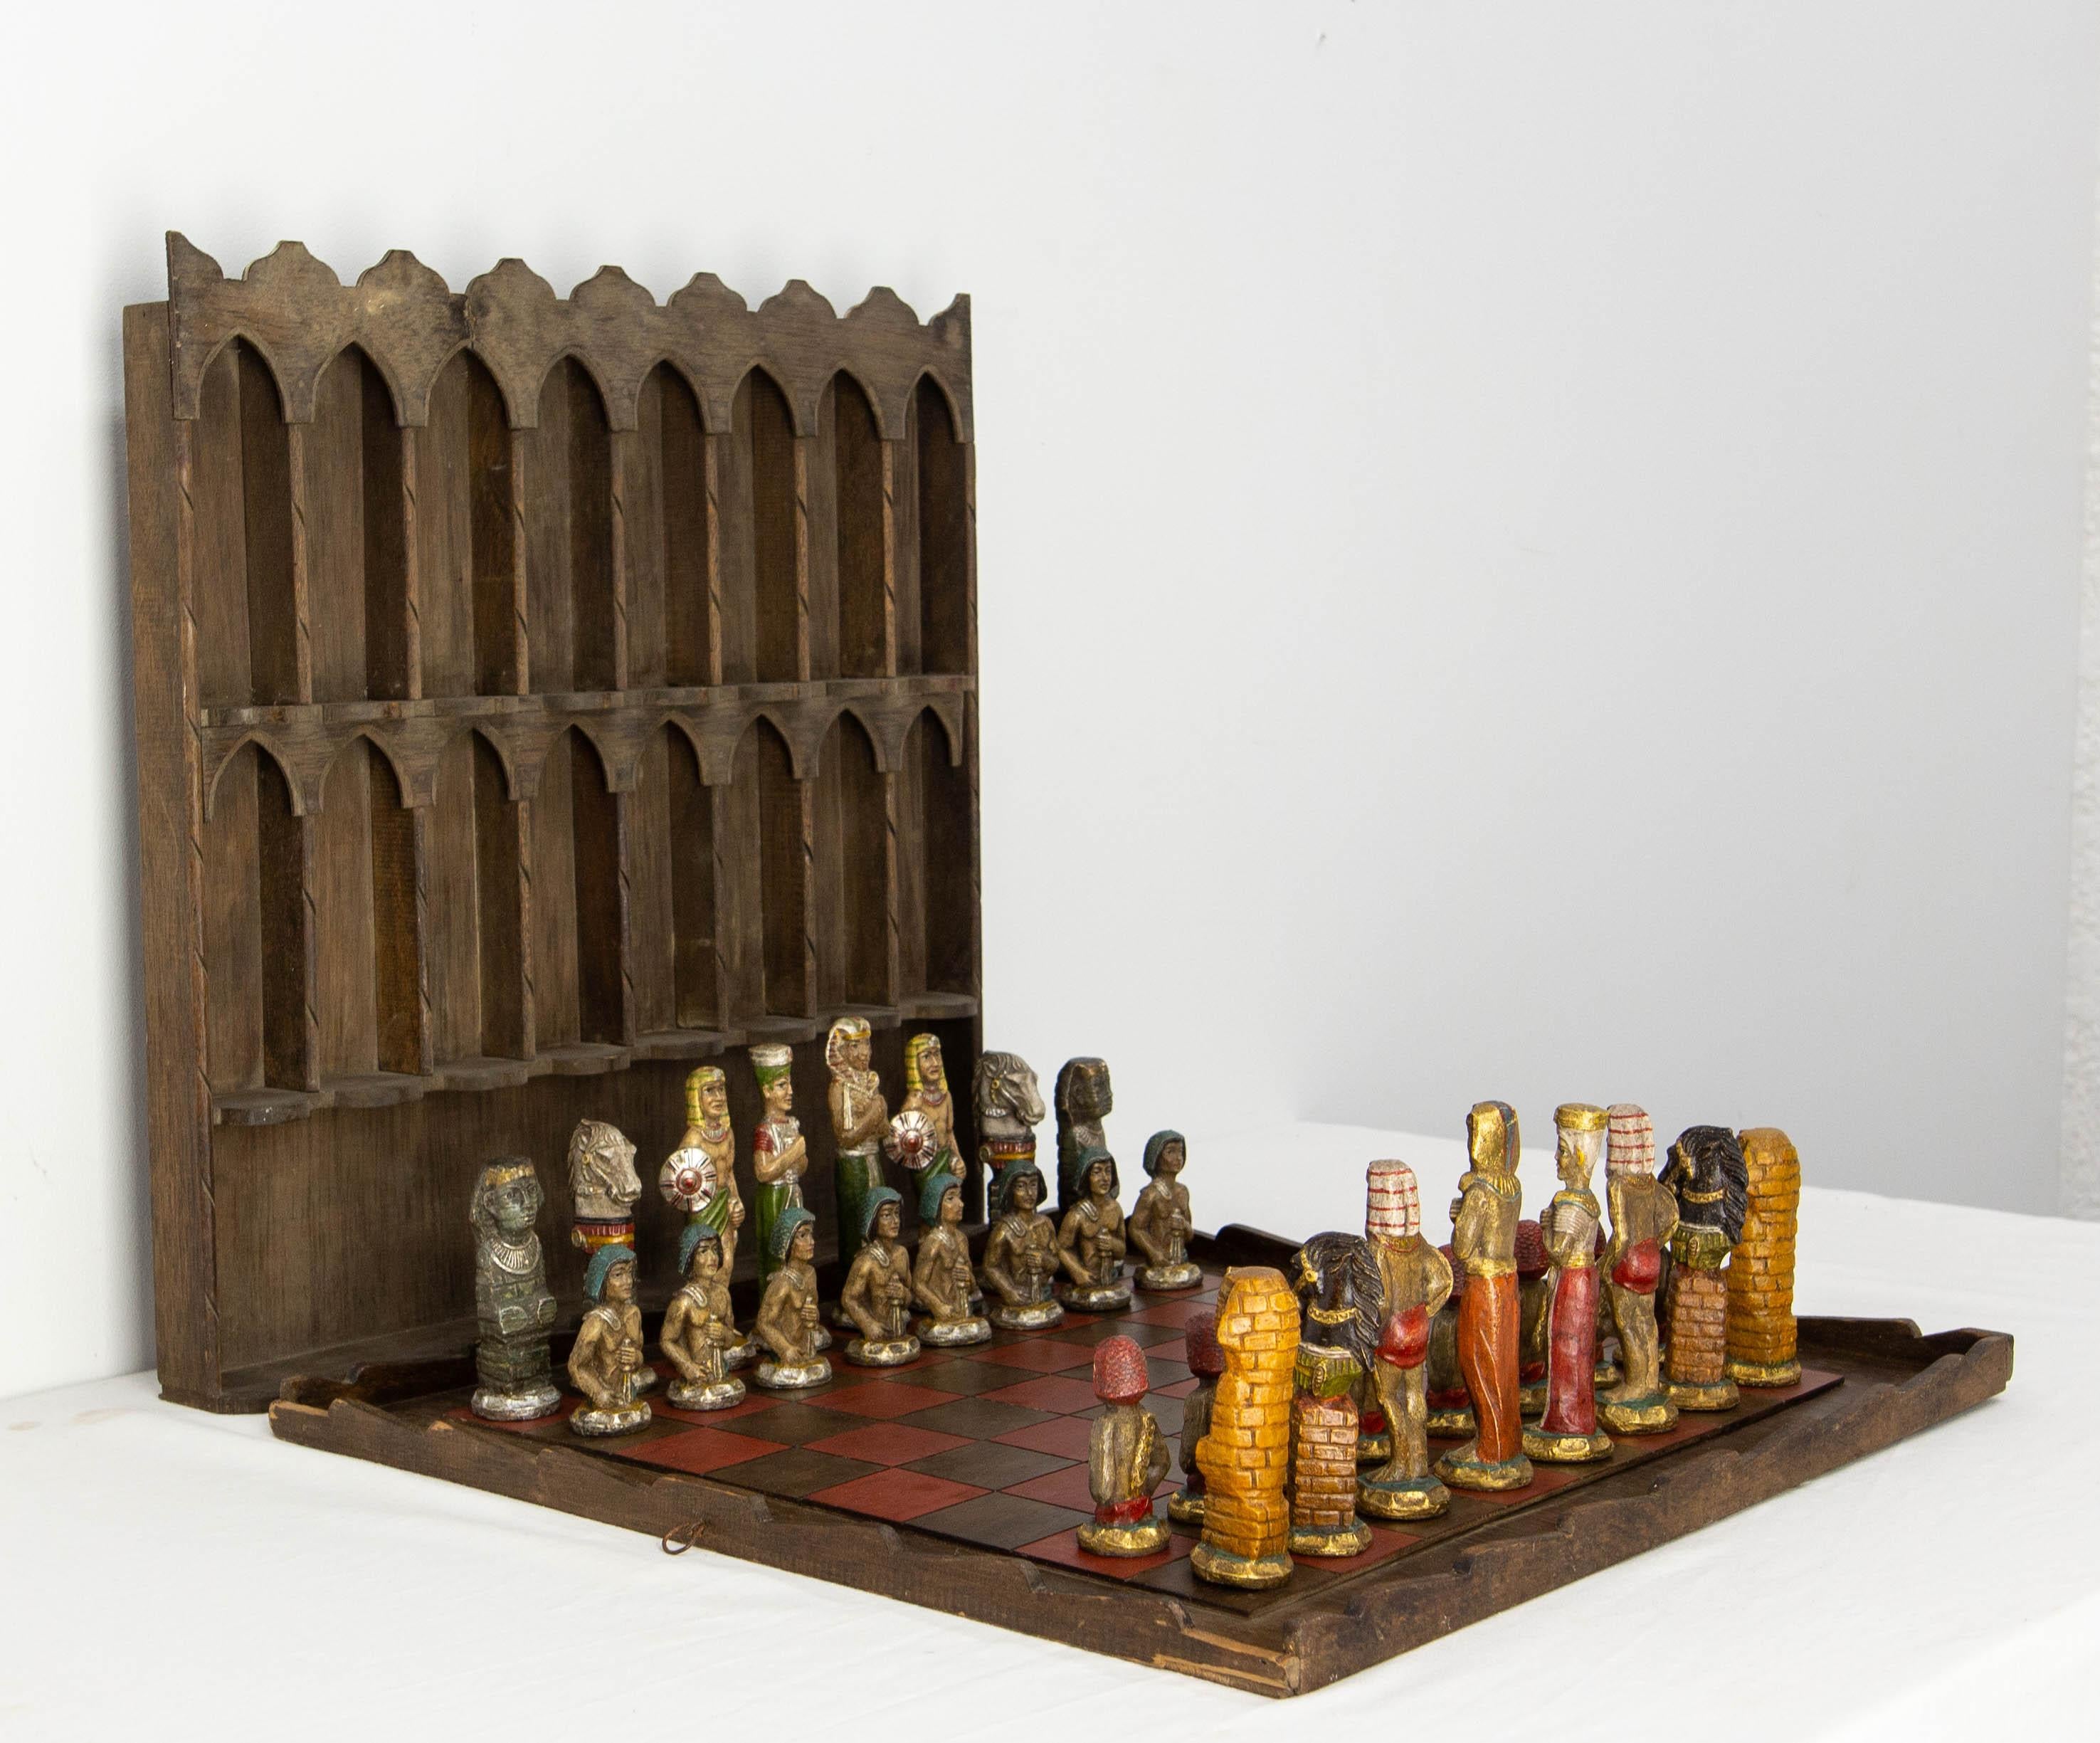 Französisches Schachspiel in der Thematik des alten Ägyptens. Die Schachfiguren sind aus bemaltem und gewachstem Gips, das Brett ist aus Holz und es gibt auch ein Regal. Jedes Stück ist charaktervoll und das Ensemble ist erstaunlich.
Alle Stücke